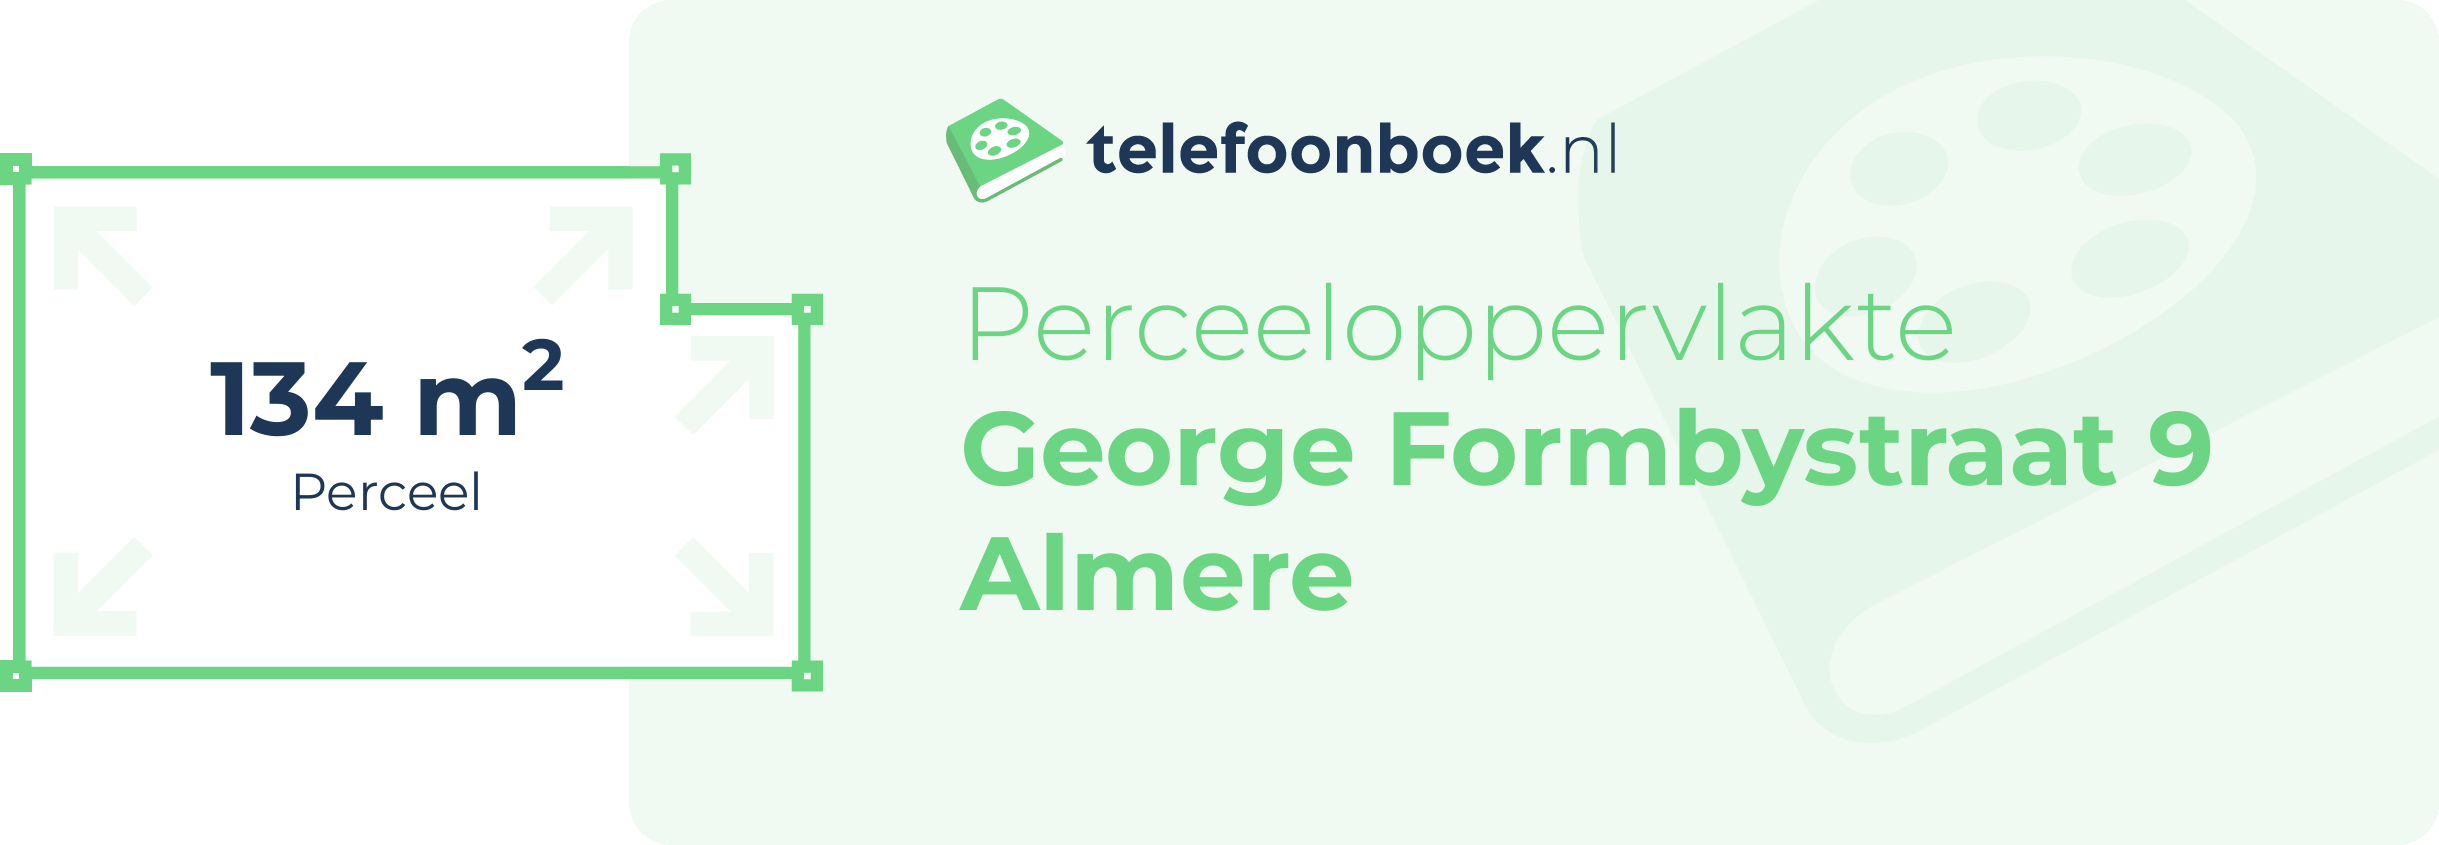 Perceeloppervlakte George Formbystraat 9 Almere